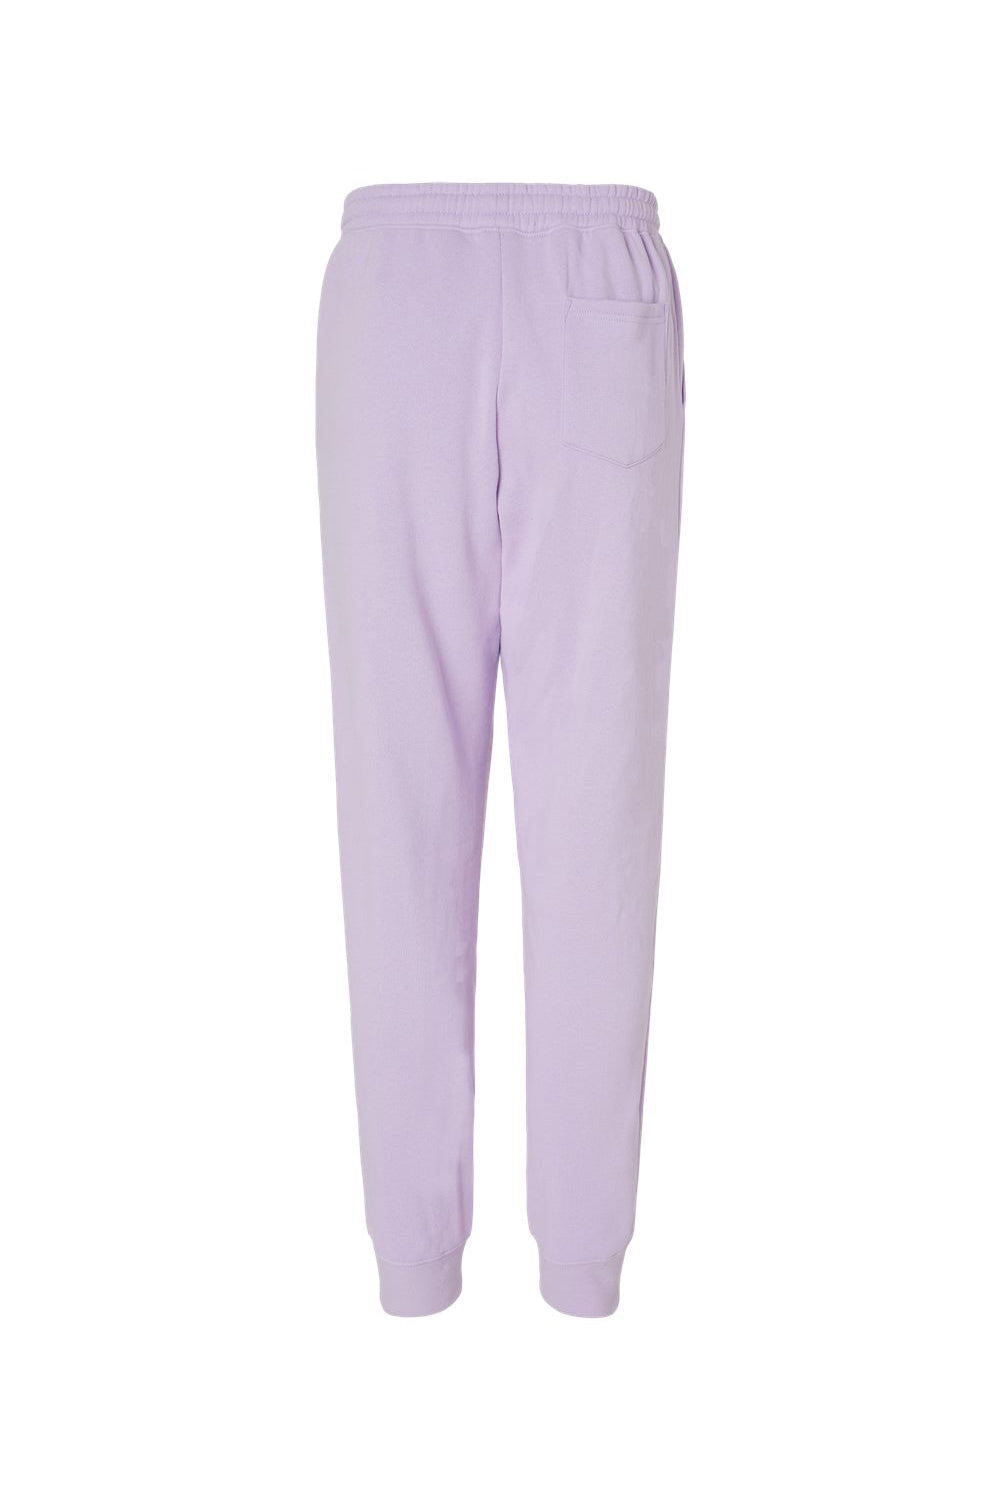 Independent Trading Co. IND20PNT Mens Fleece Sweatpants w/ Pockets Lavender Purple Flat Back